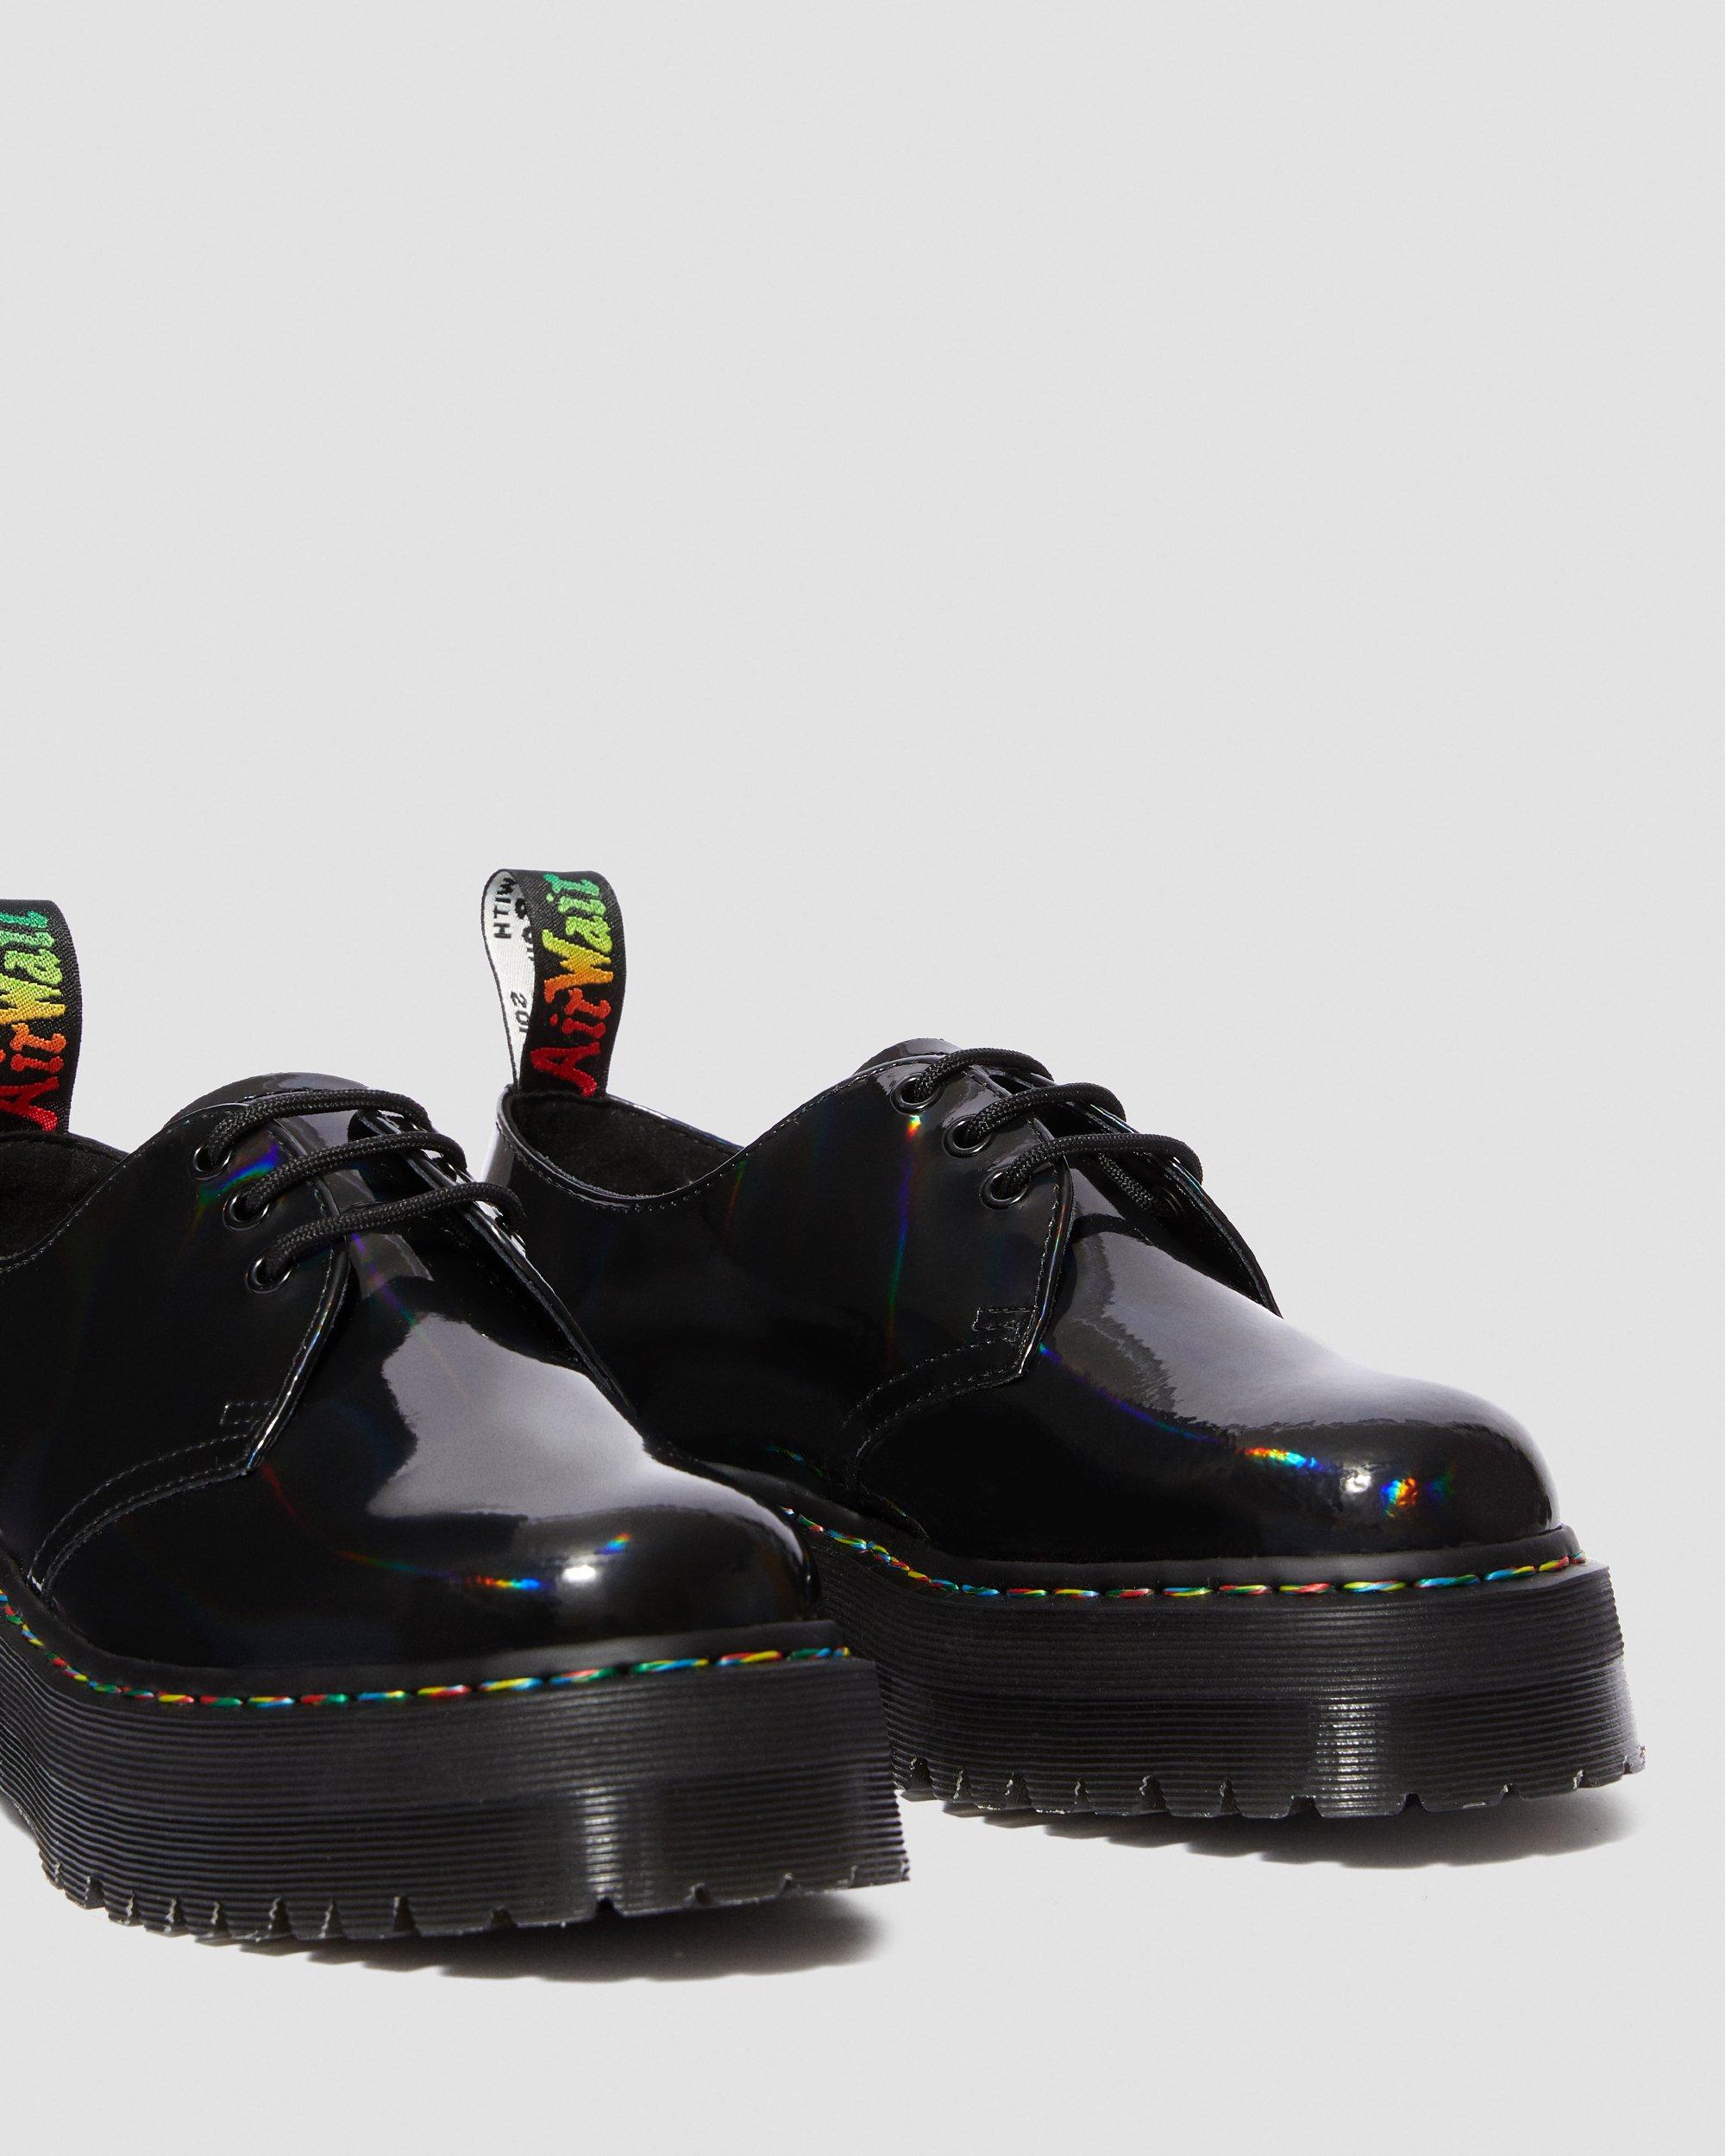 Dr MARTENS 1461 Shoes For PRIDE Black Smooth Rainbow UK 9.5 10 EU 44 45 RARE